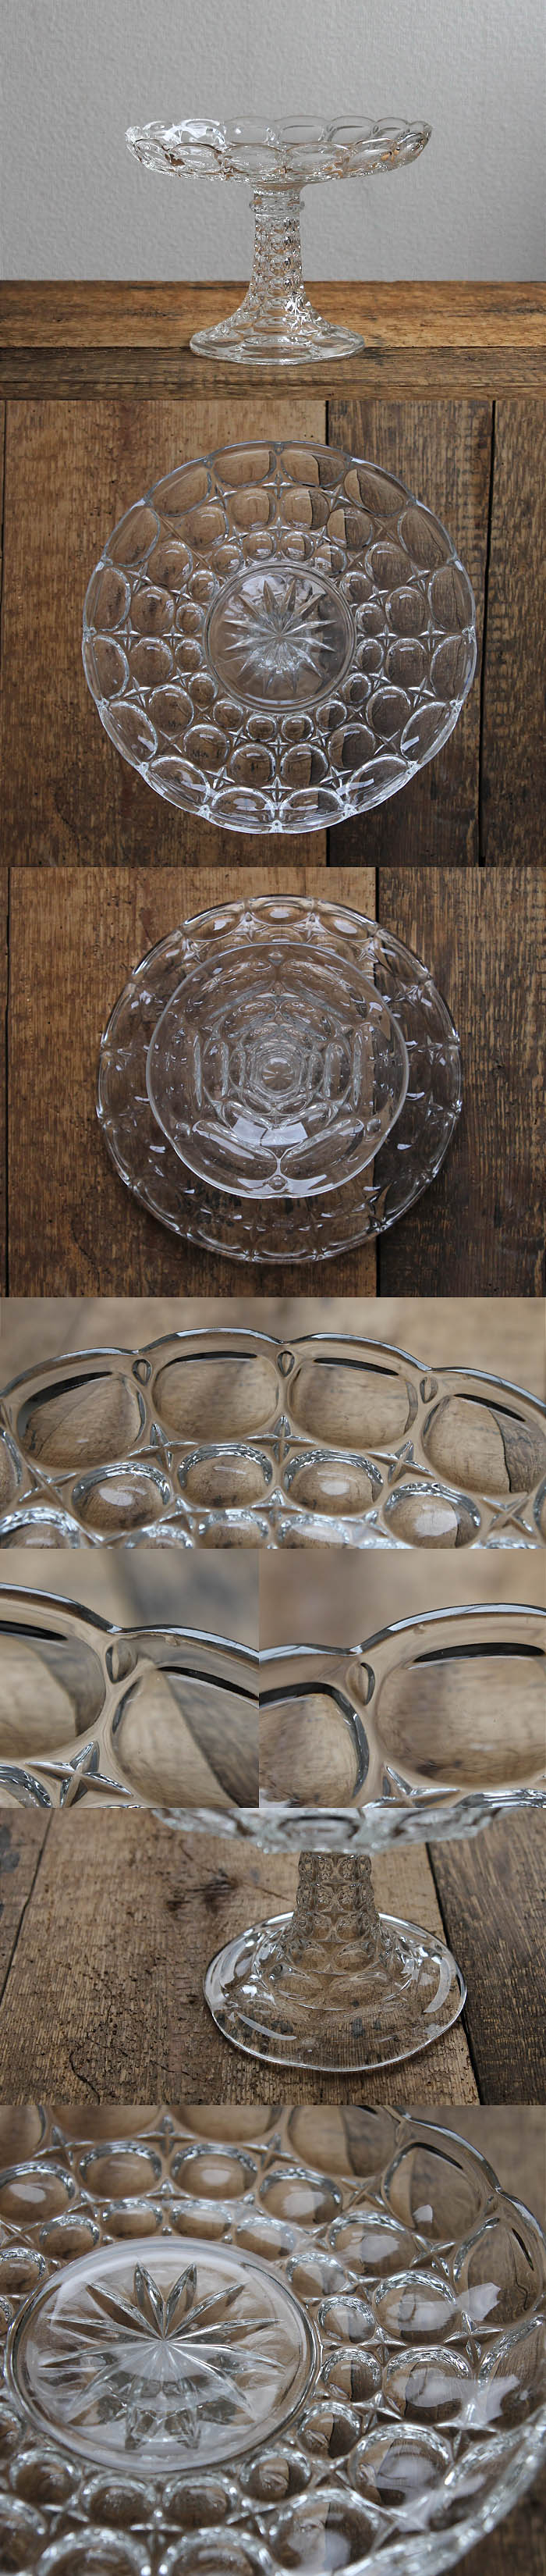 イギリス アンティーク ガラスケーキスタンド コンポート皿 食器 